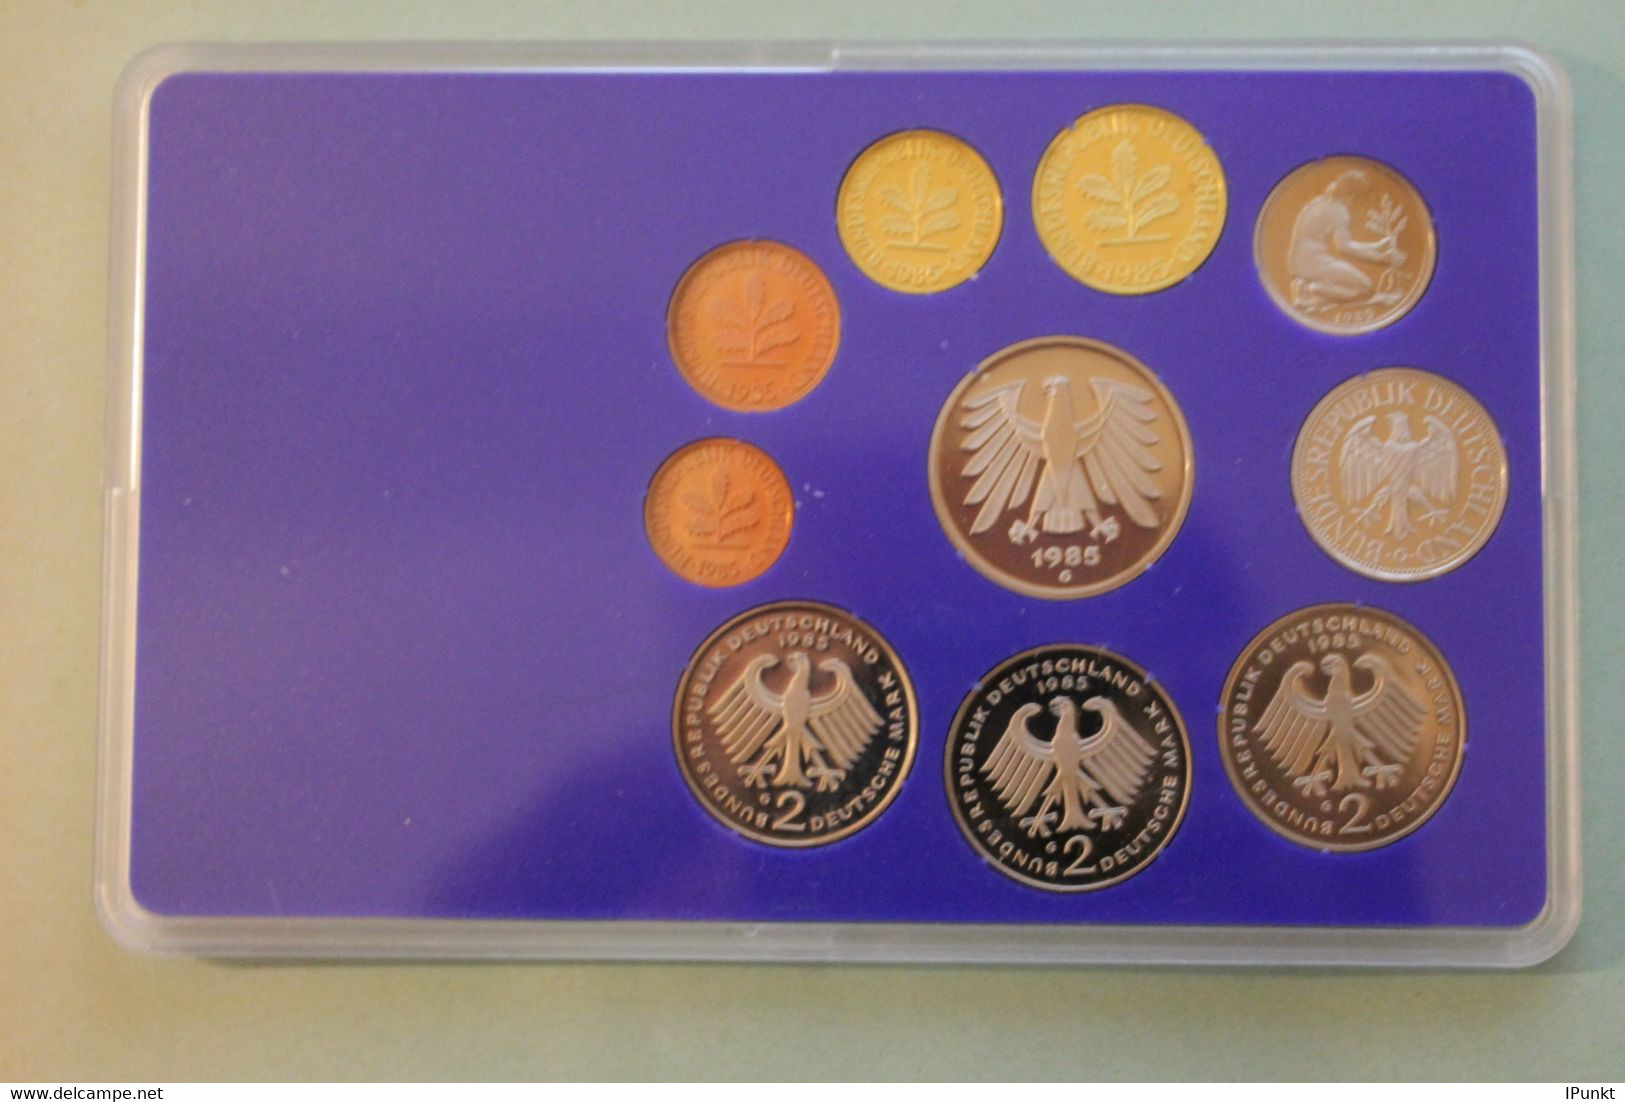 Deutschland, Kursmünzensatz Spiegelglanz (PP), 1985, G - Mint Sets & Proof Sets